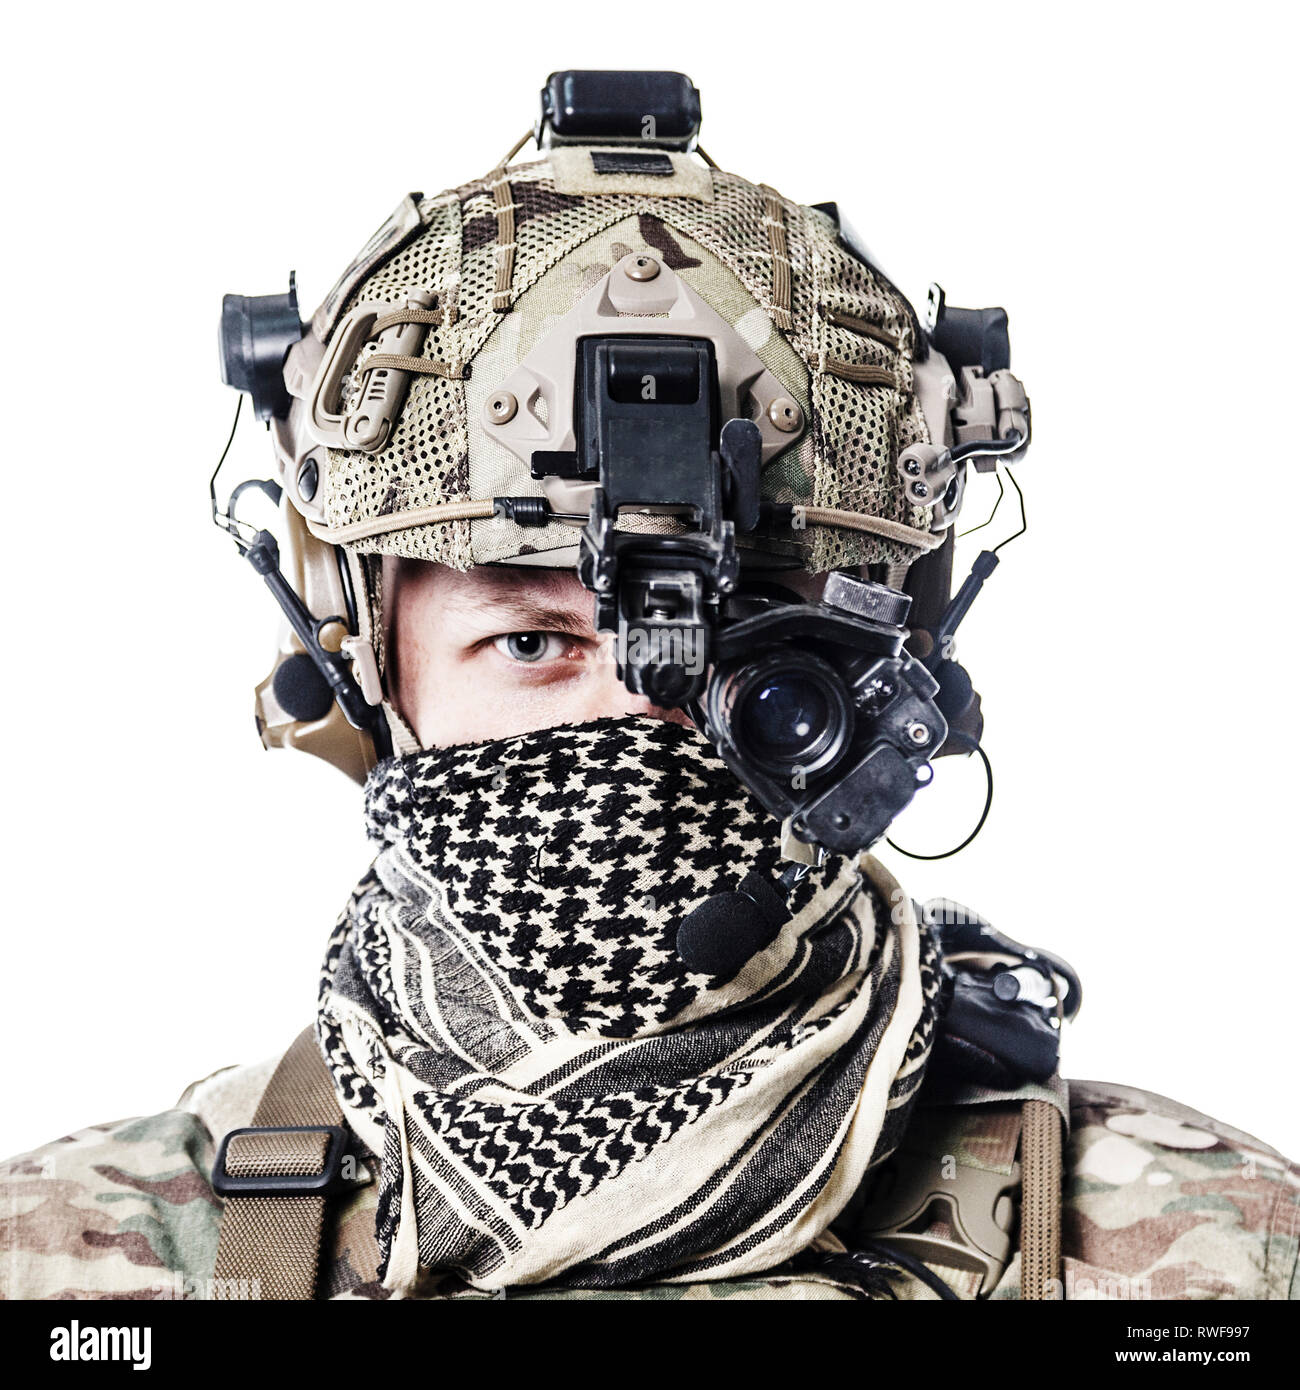 Portrait d'un Ranger de l'armée portant un casque de combat et foulard Shemagh Kufiya. Banque D'Images